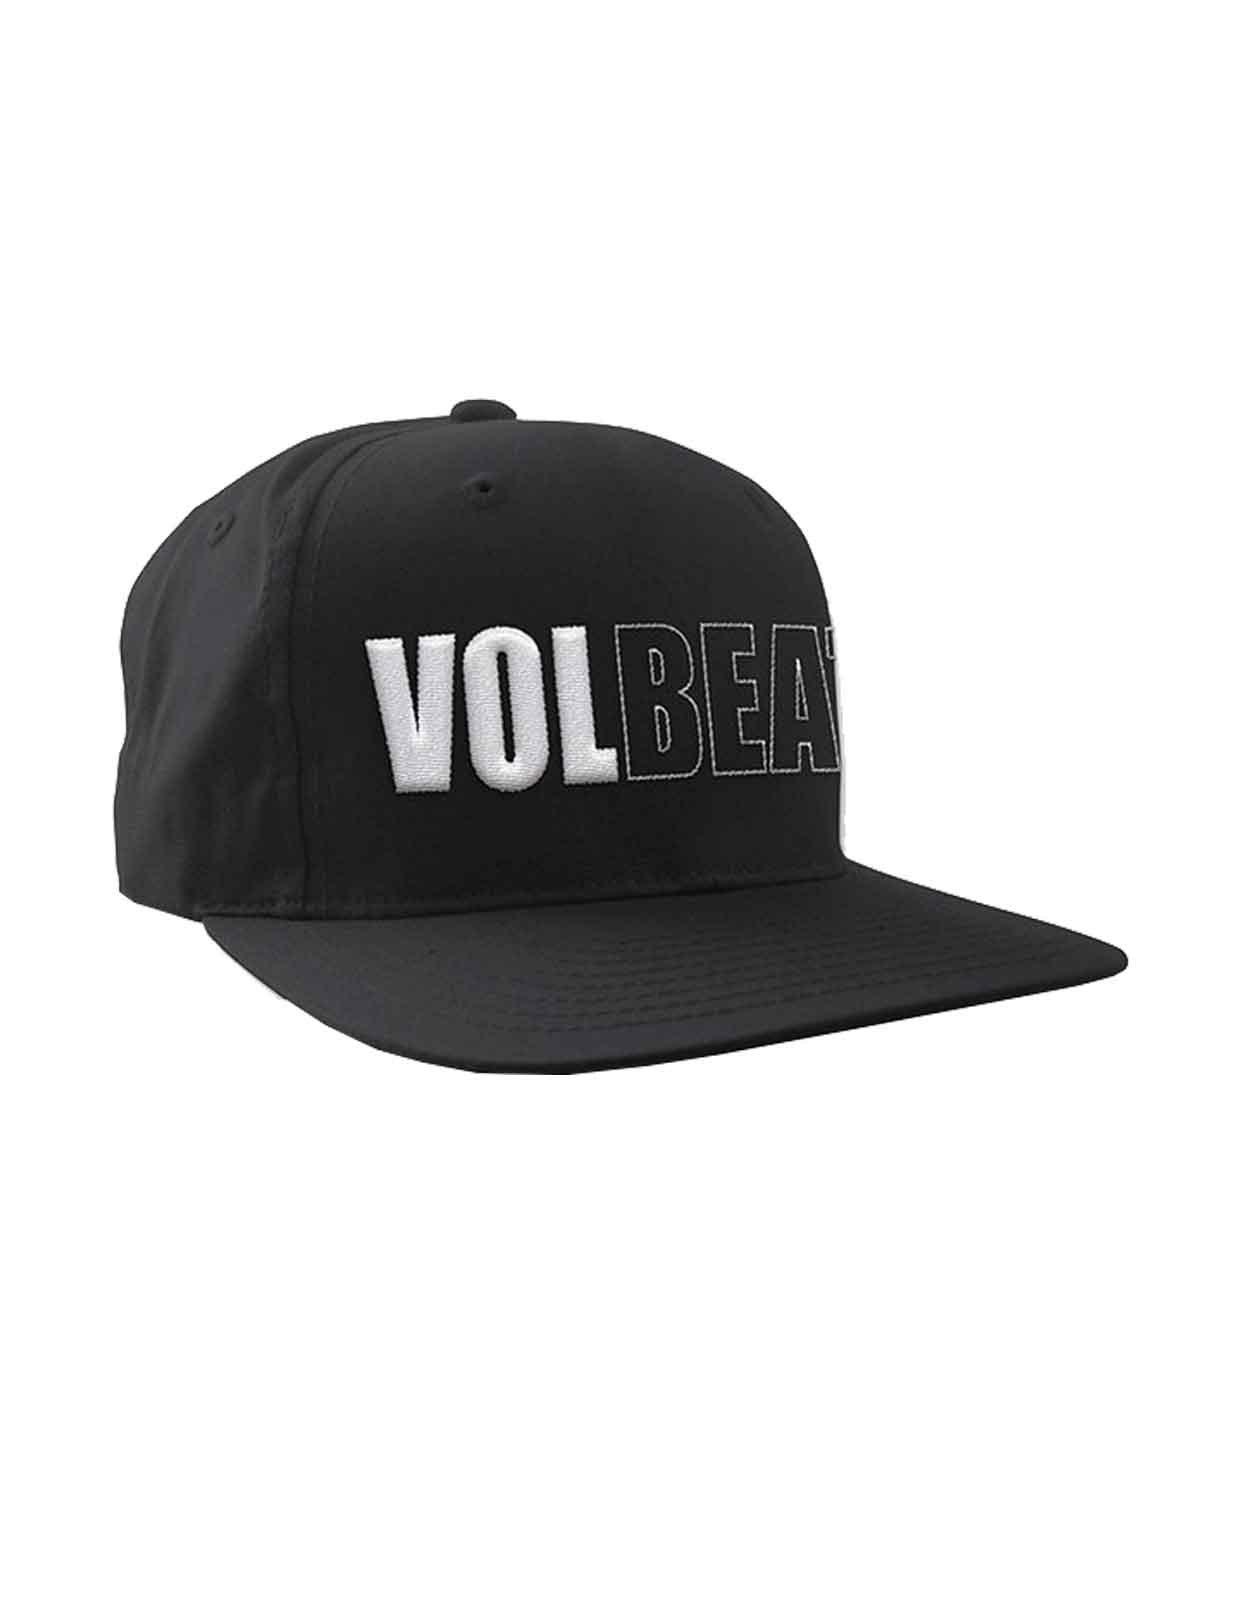 Бейсбольная кепка Snapback с объемным логотипом Band Volbeat, черный бейсбольная кепка snapback с логотипом band trooper brim iron maiden черный